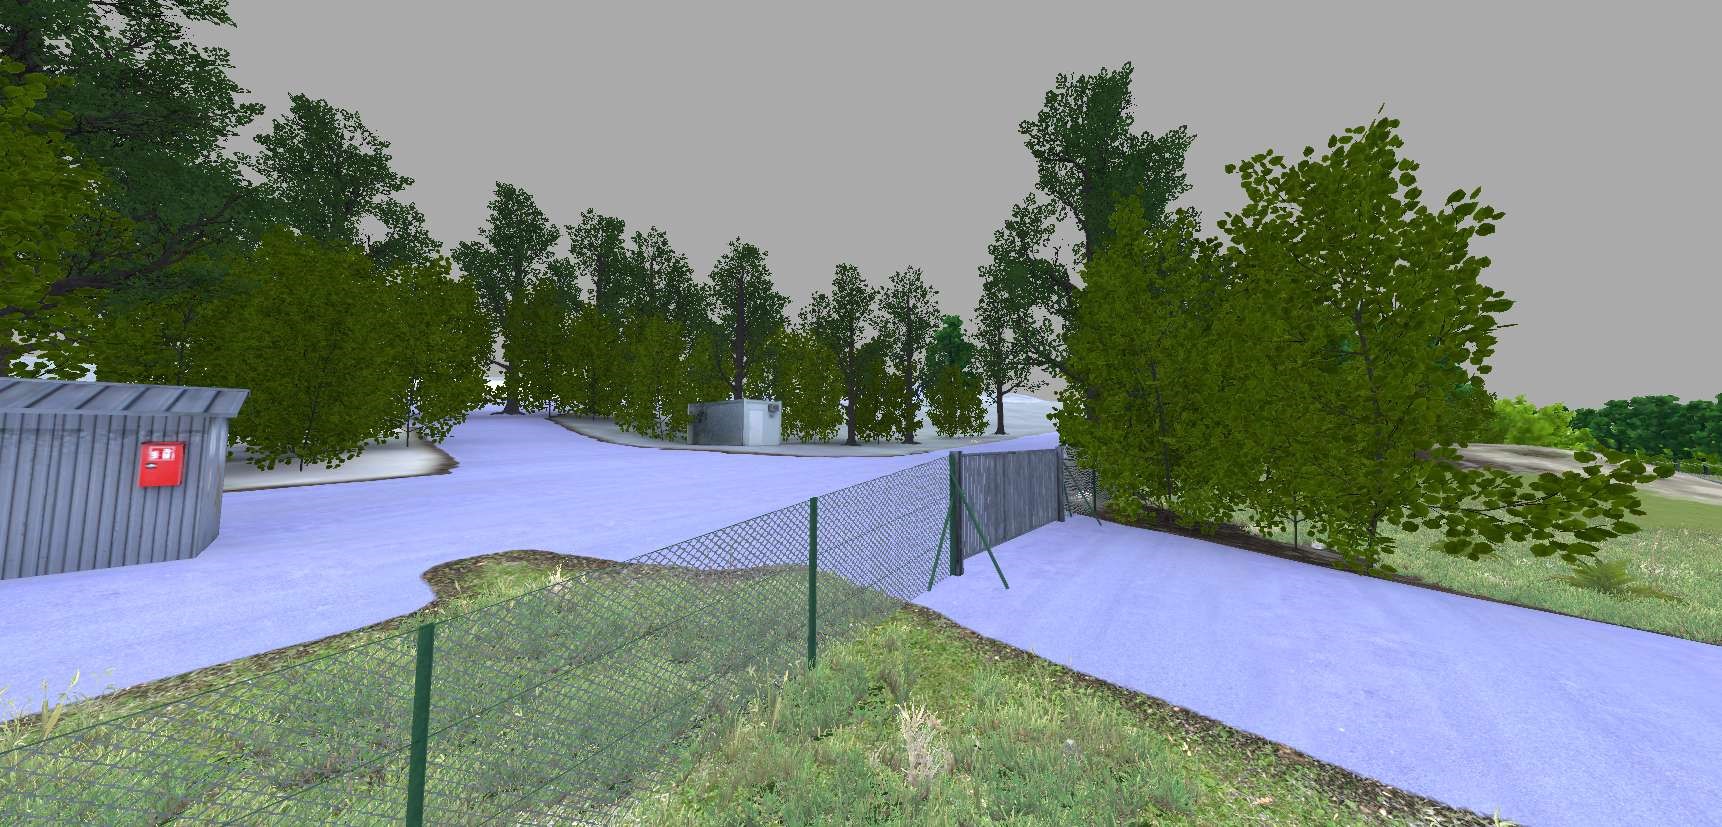 Eine Virtual Reality-Trainingsszene, die ein abgesperrtes und umzäuntes Gelände zeigt - der Zugang zu einem Munitionslager.